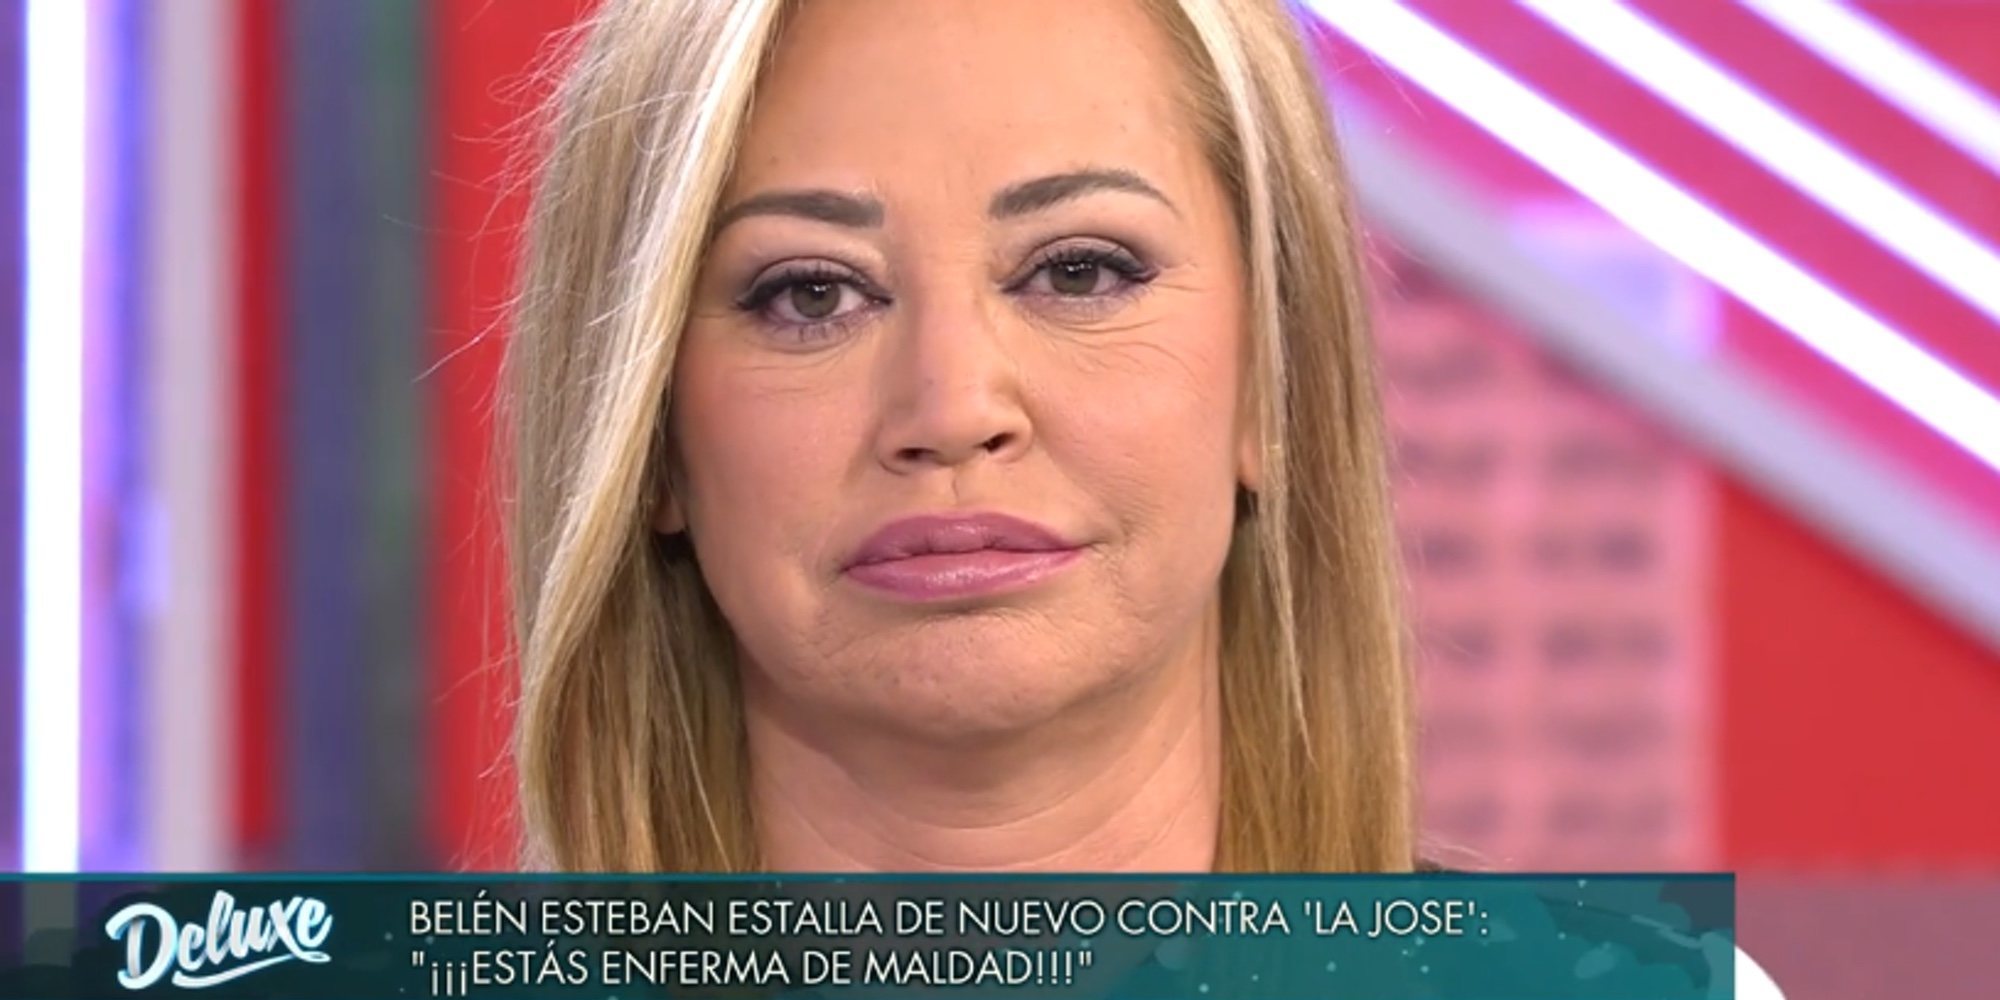 La advertencia de Belén Esteban a María José Campanario: "Si mueves ficha, saco lo del teléfono"